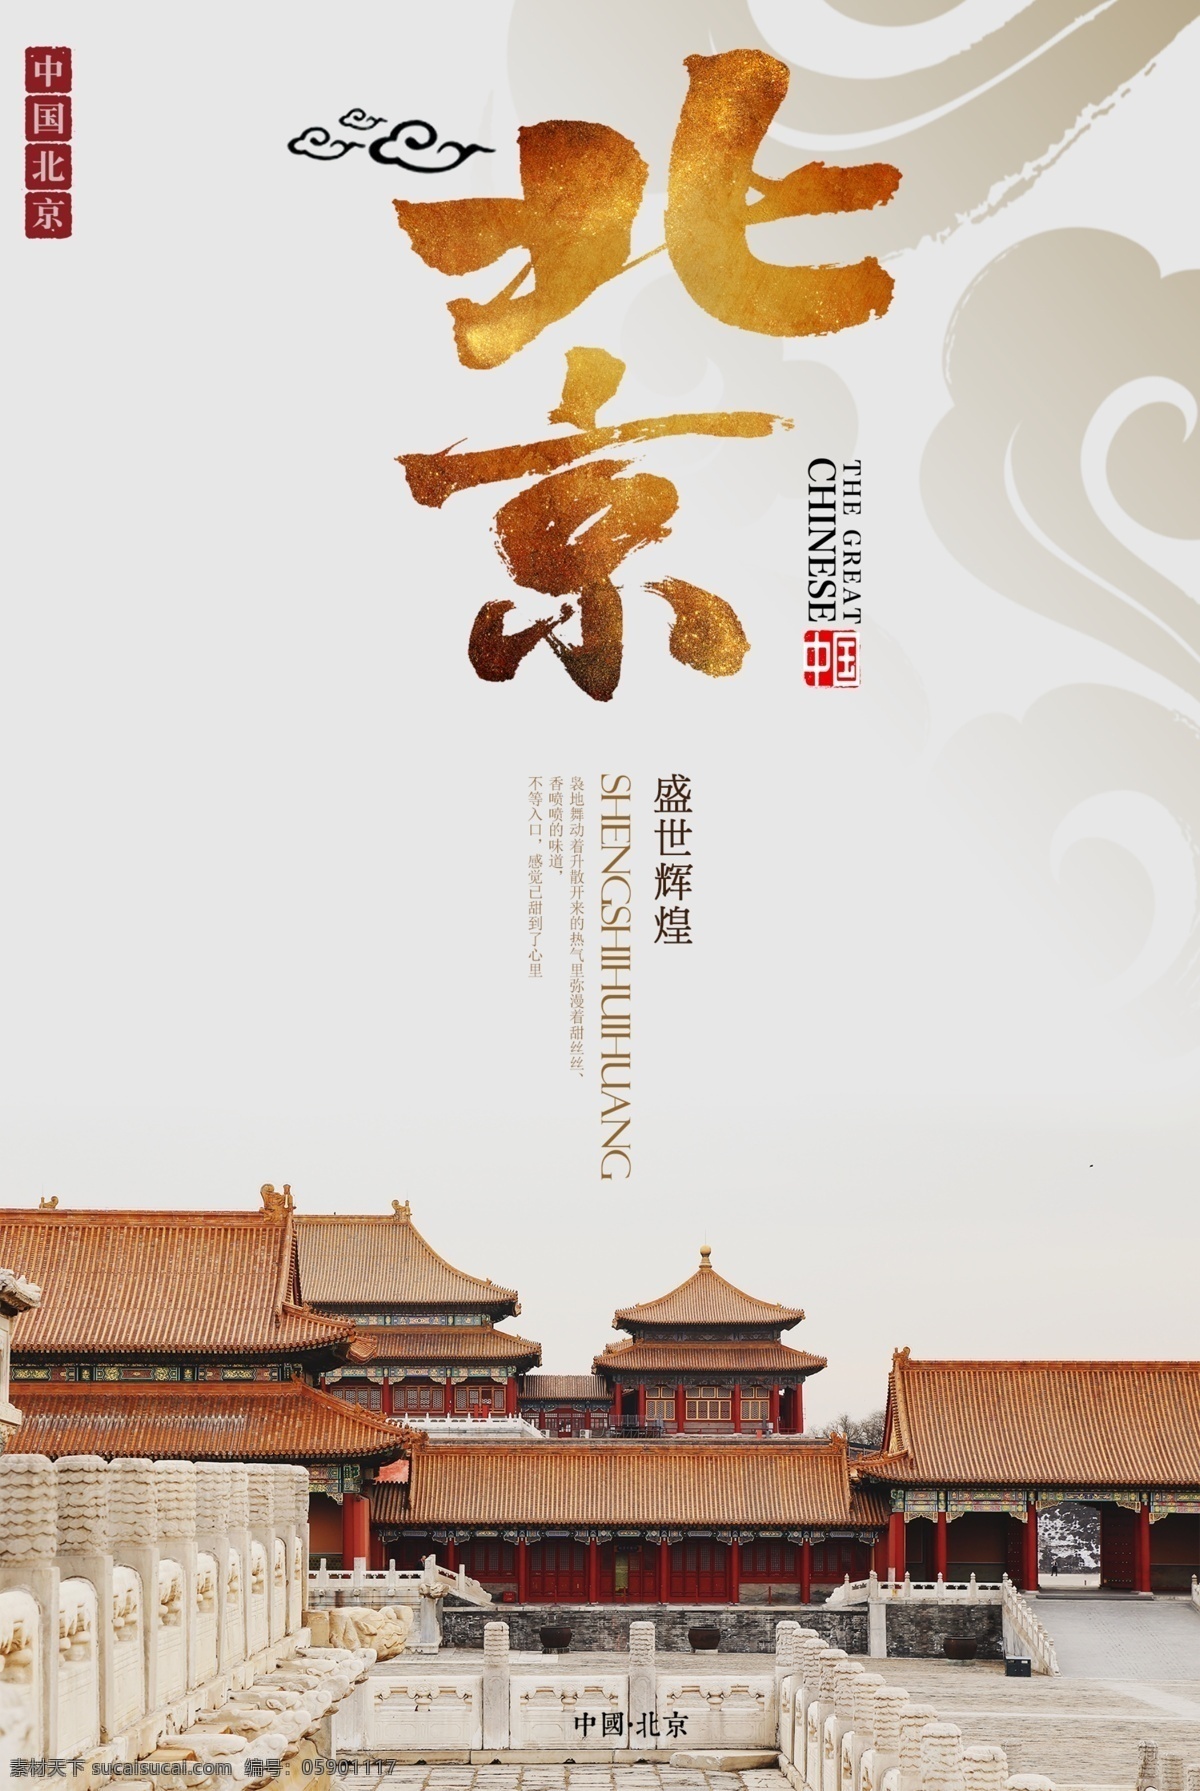 简约 北京 旅游 海报 北京旅游海报 旅游海报 北京海报 京城 皇城 中国风 紫禁城 盛世辉煌 背景之旅